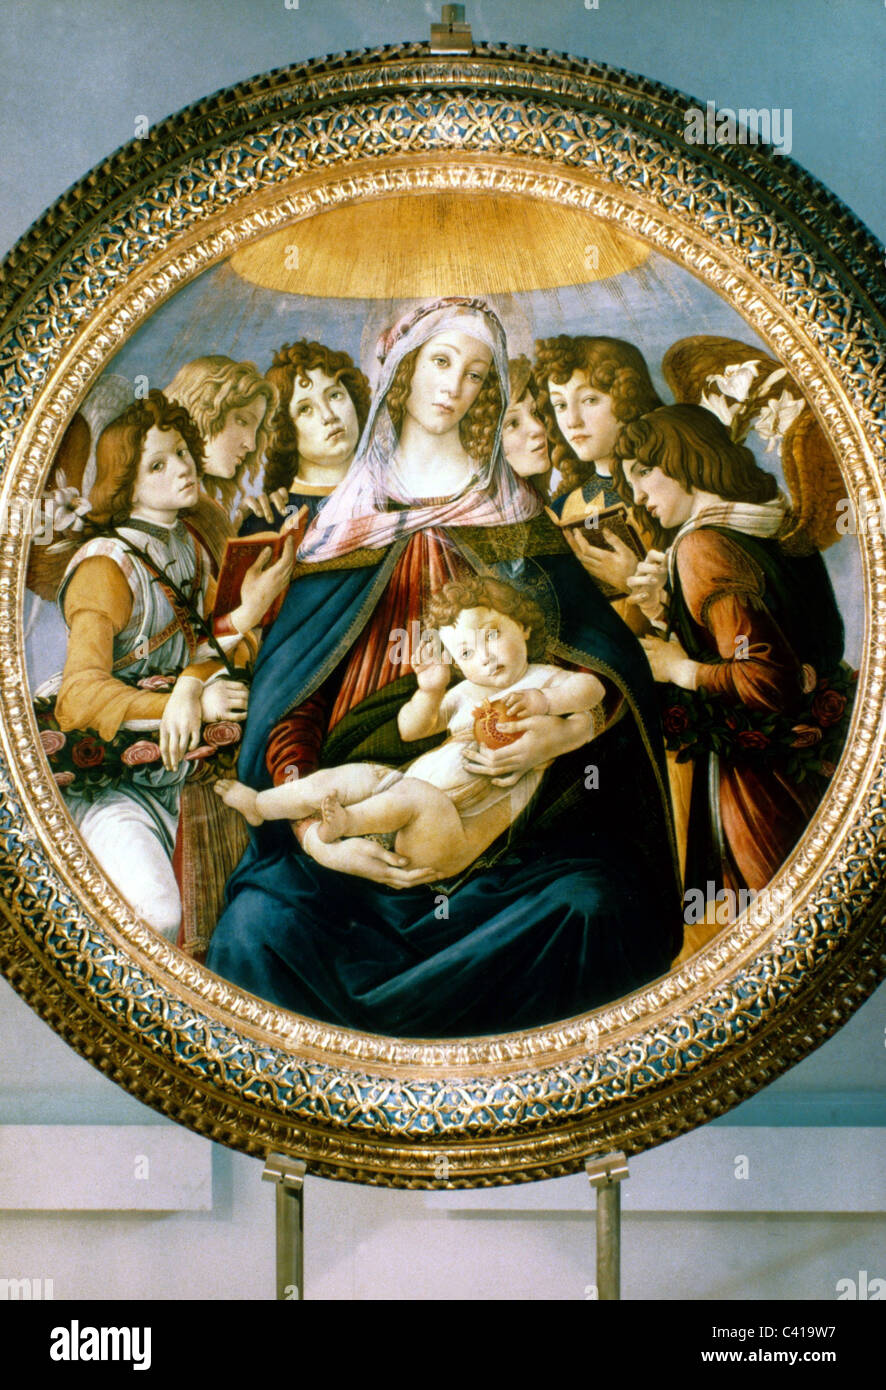 Bildende Kunst, Botticelli, Sandro (1445-1510), Malerei, "Madonna des Granatapfels" (Madonna mit Kind und sechs Engel), 1487, d Stockfoto